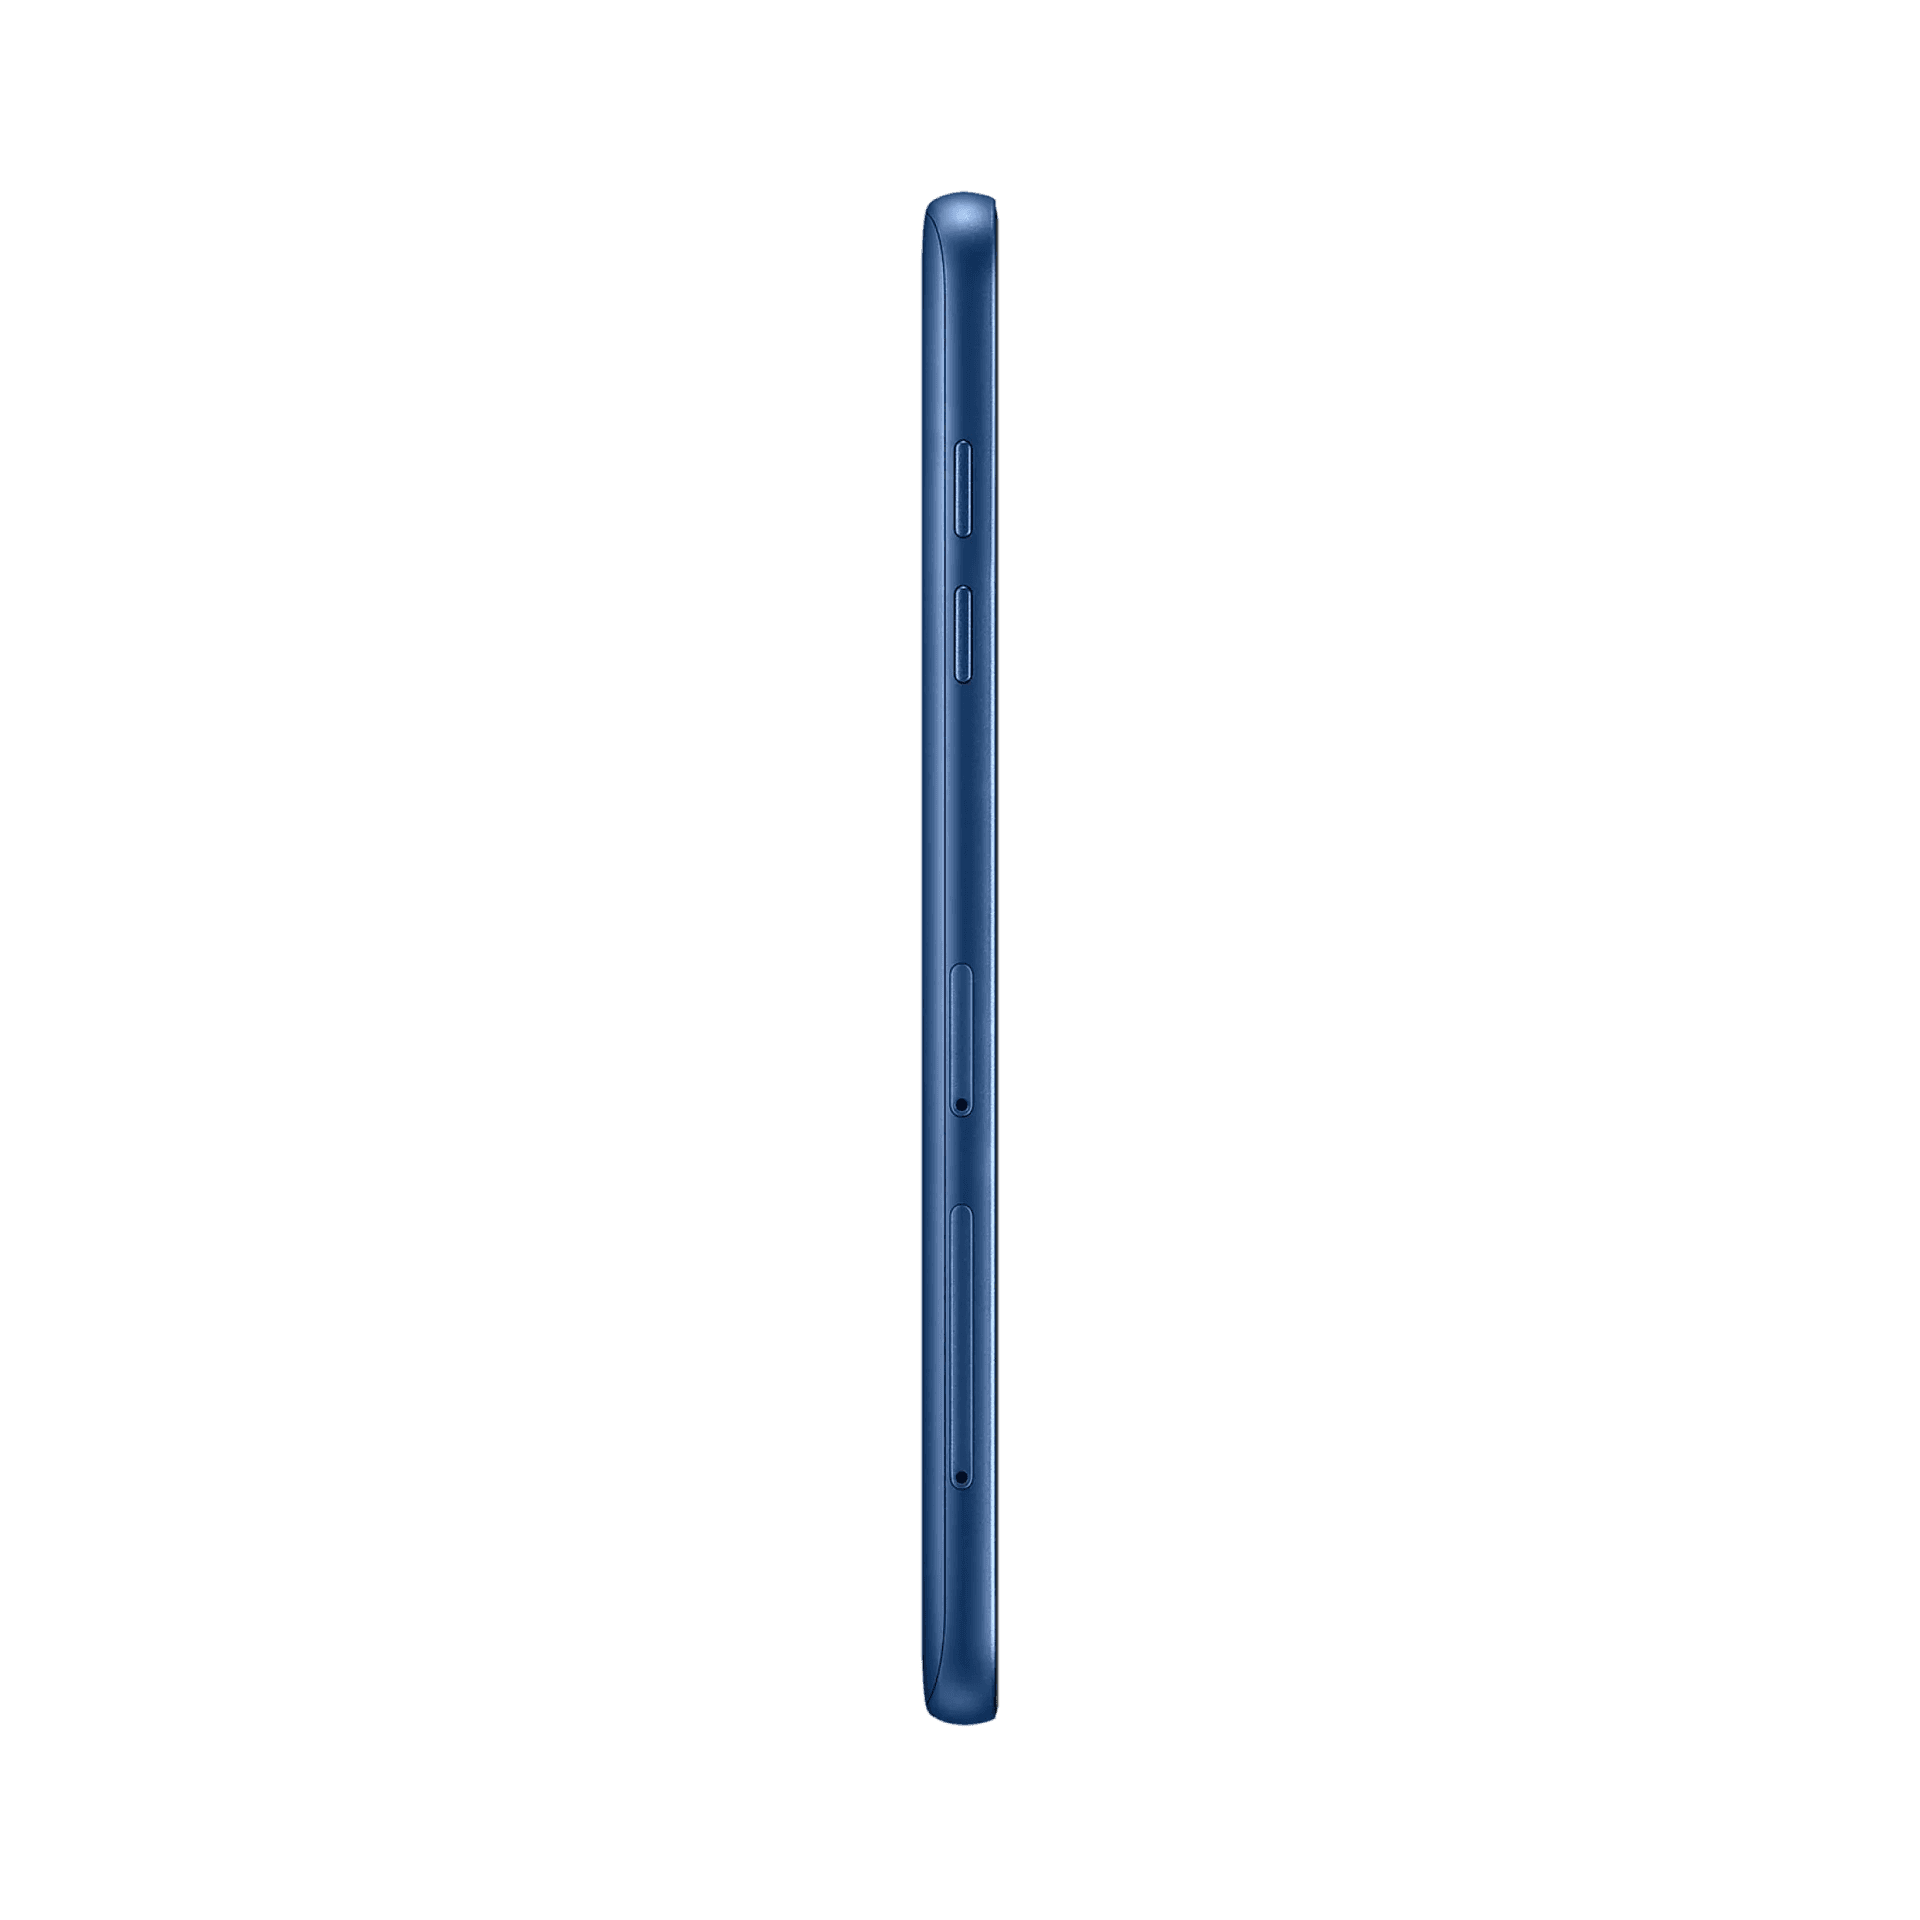 Samsung Galaxy J8 - 32 GB - Mavi